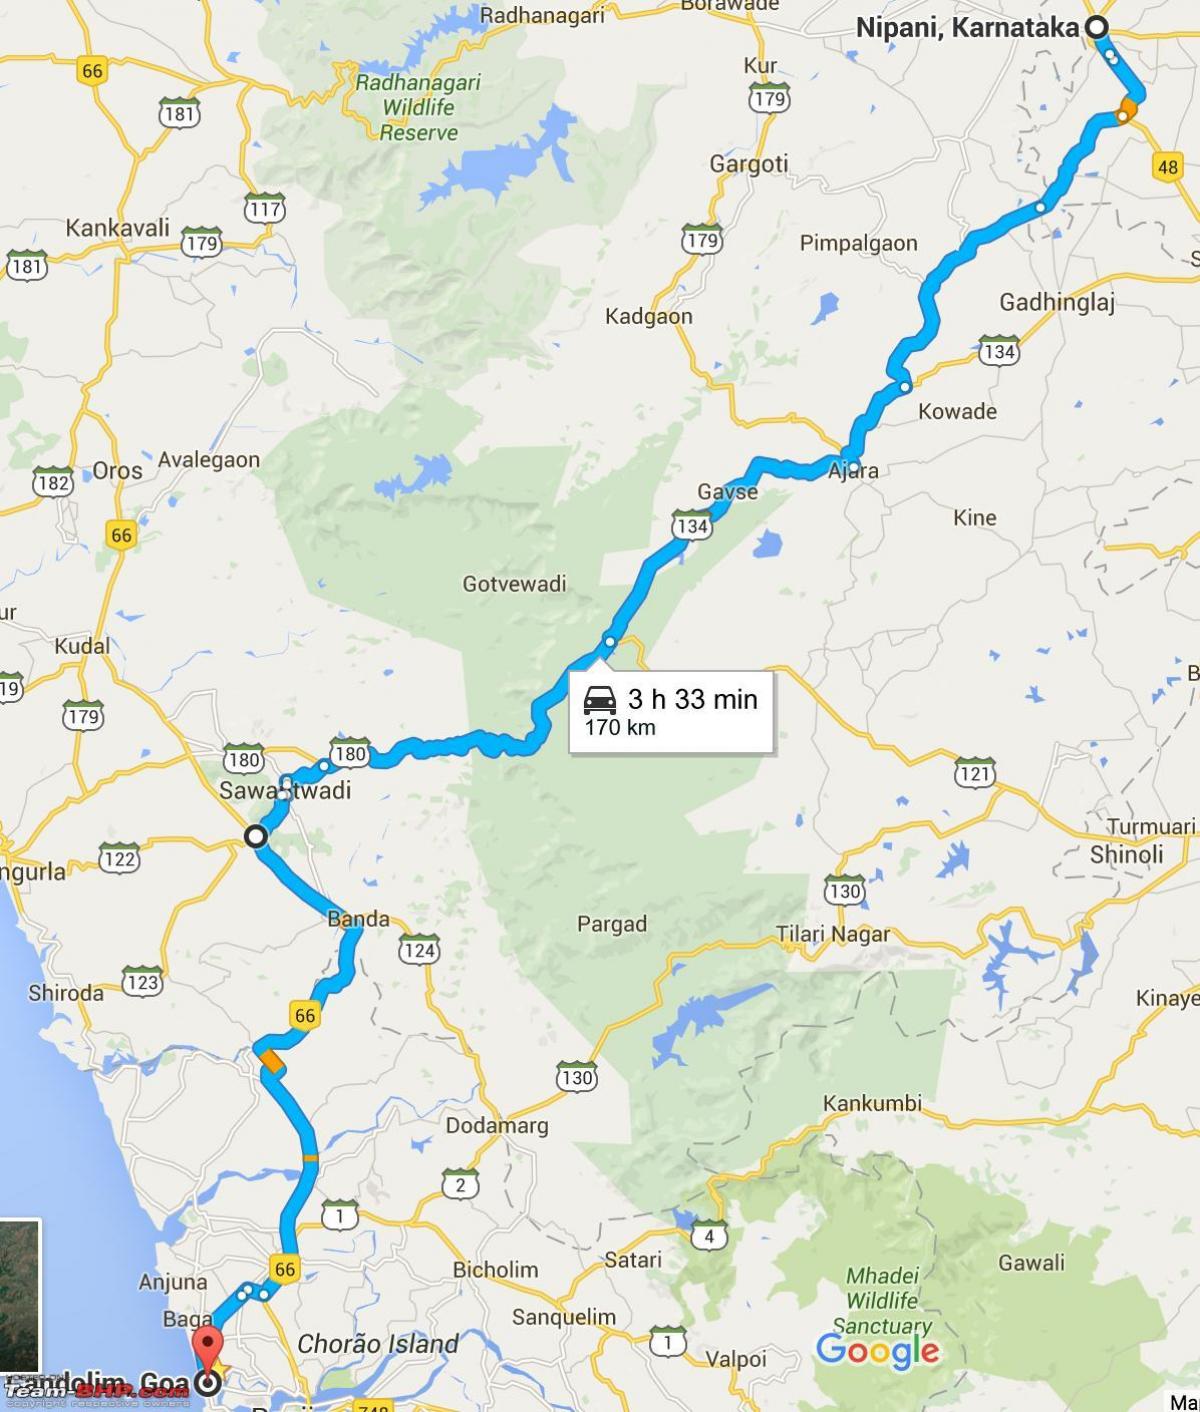 Mumbai til goa highway kart